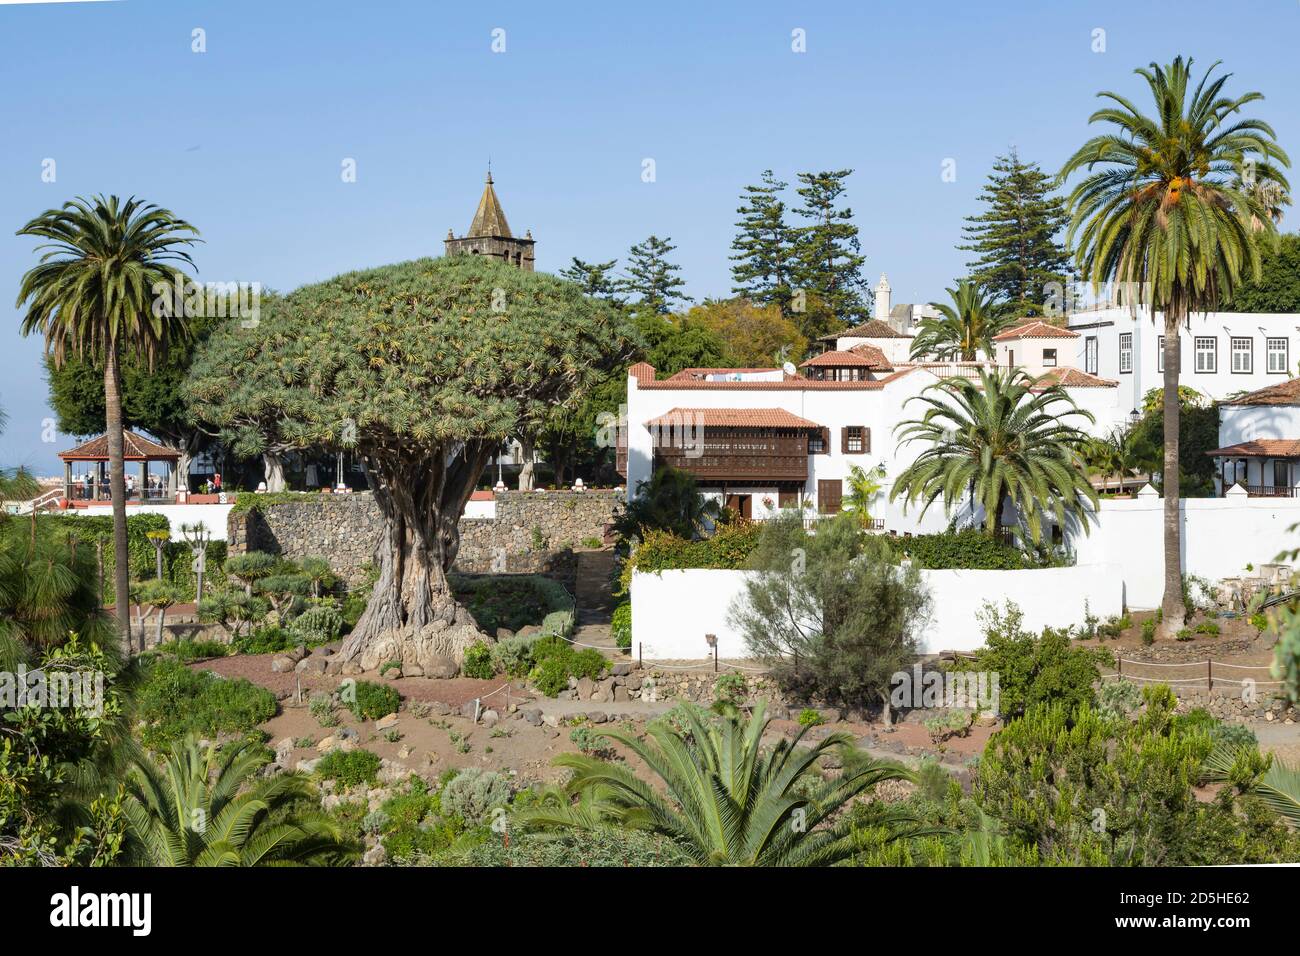 TENERIFE, SPAIN - March 11, 2015. Millennial Dragon Tree Park, El Drago, or Drago Milenario, Tenerife, Canary Islands Stock Photo